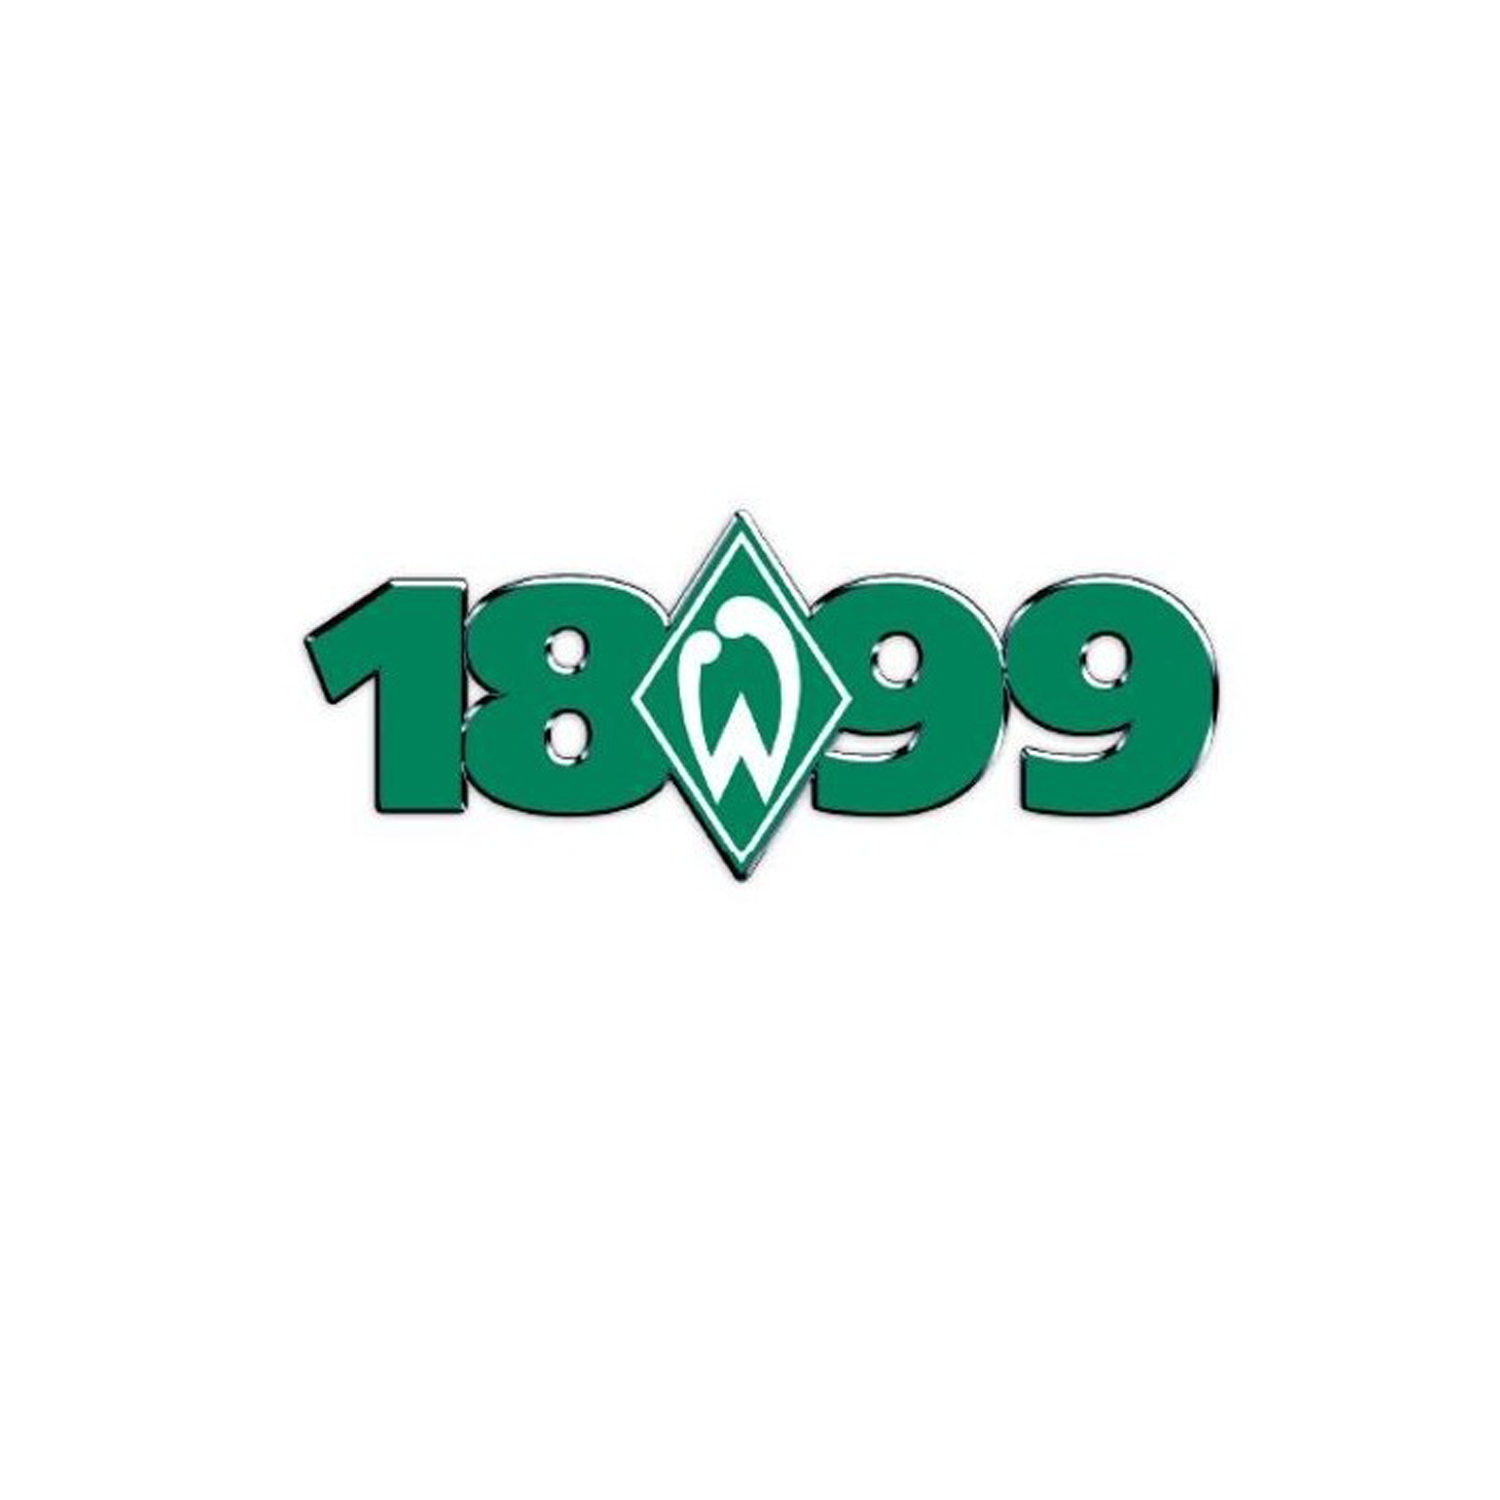 SV Werder Bremen - Pin 1899 - grün